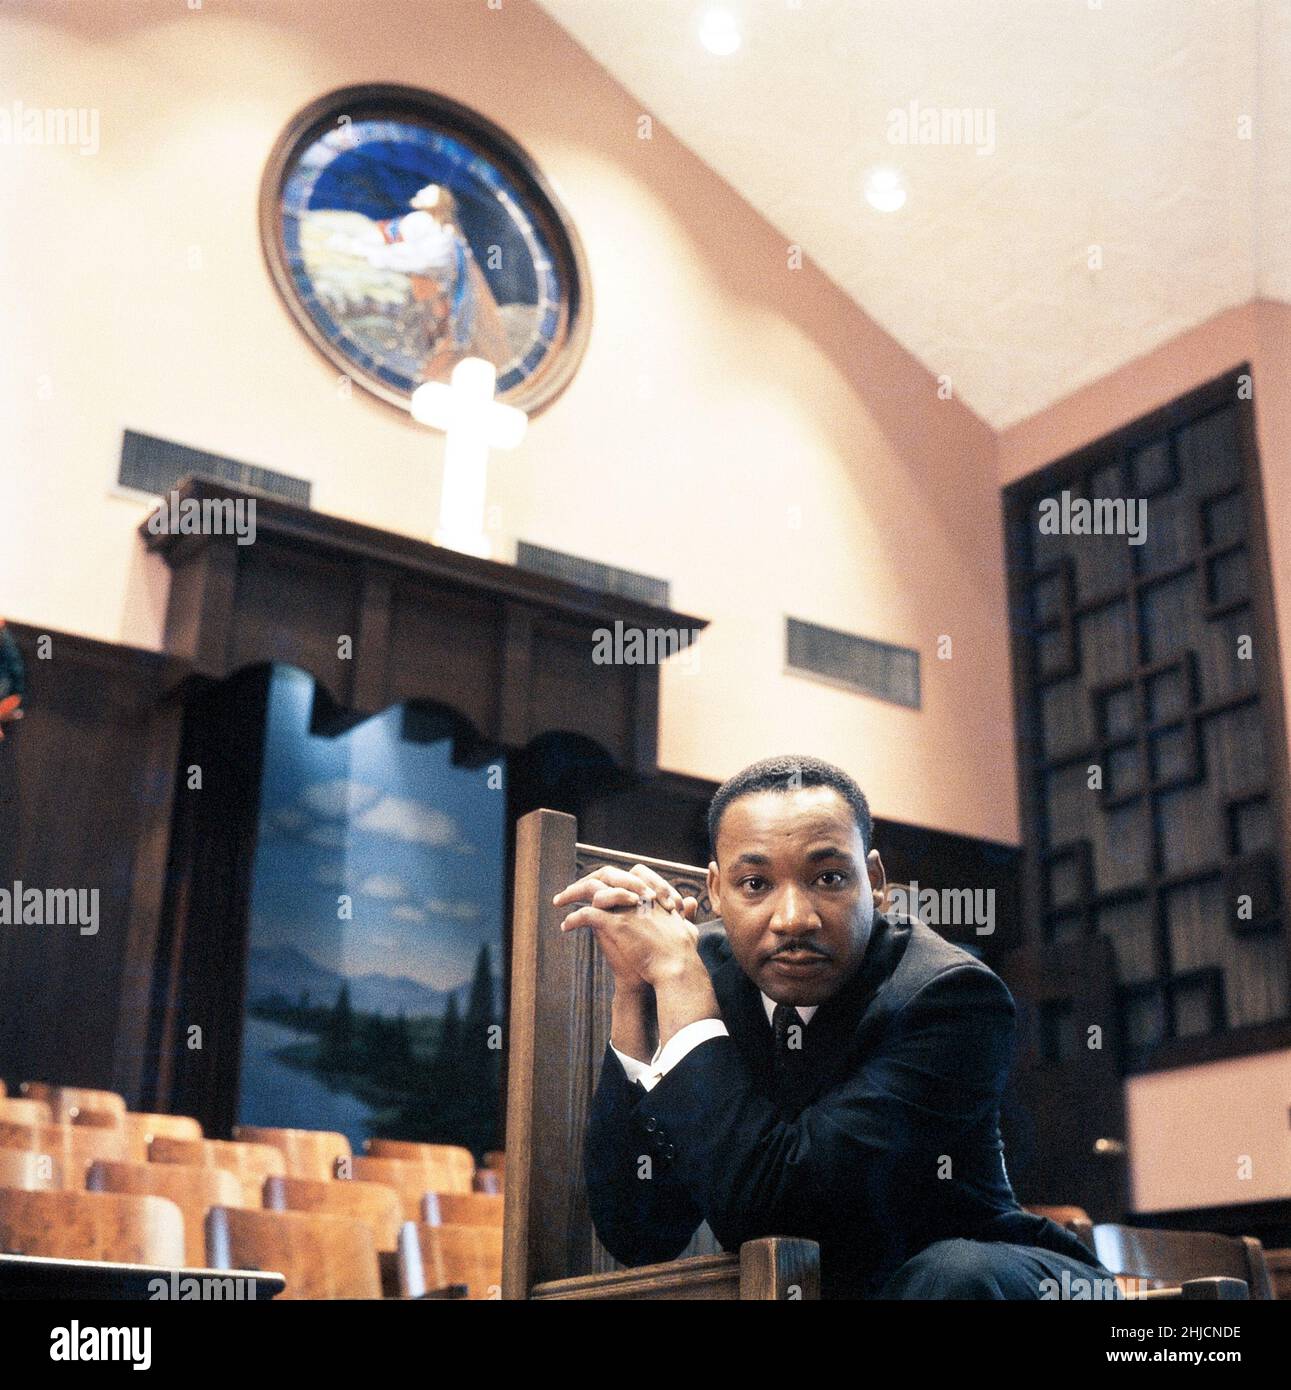 Martin Luther King, Jr. in einer Kirche in Atlanta, Georgia, 1968. Martin Luther King, Jr. (15. Januar 1929 ‚Äì 4. April 1968) war ein amerikanischer Geistlicher, Aktivist und prominenter Führer der Bürgerrechtsbewegung. Er wurde am 4. April 1968 in Memphis, Tennessee, ermordet. Stockfoto